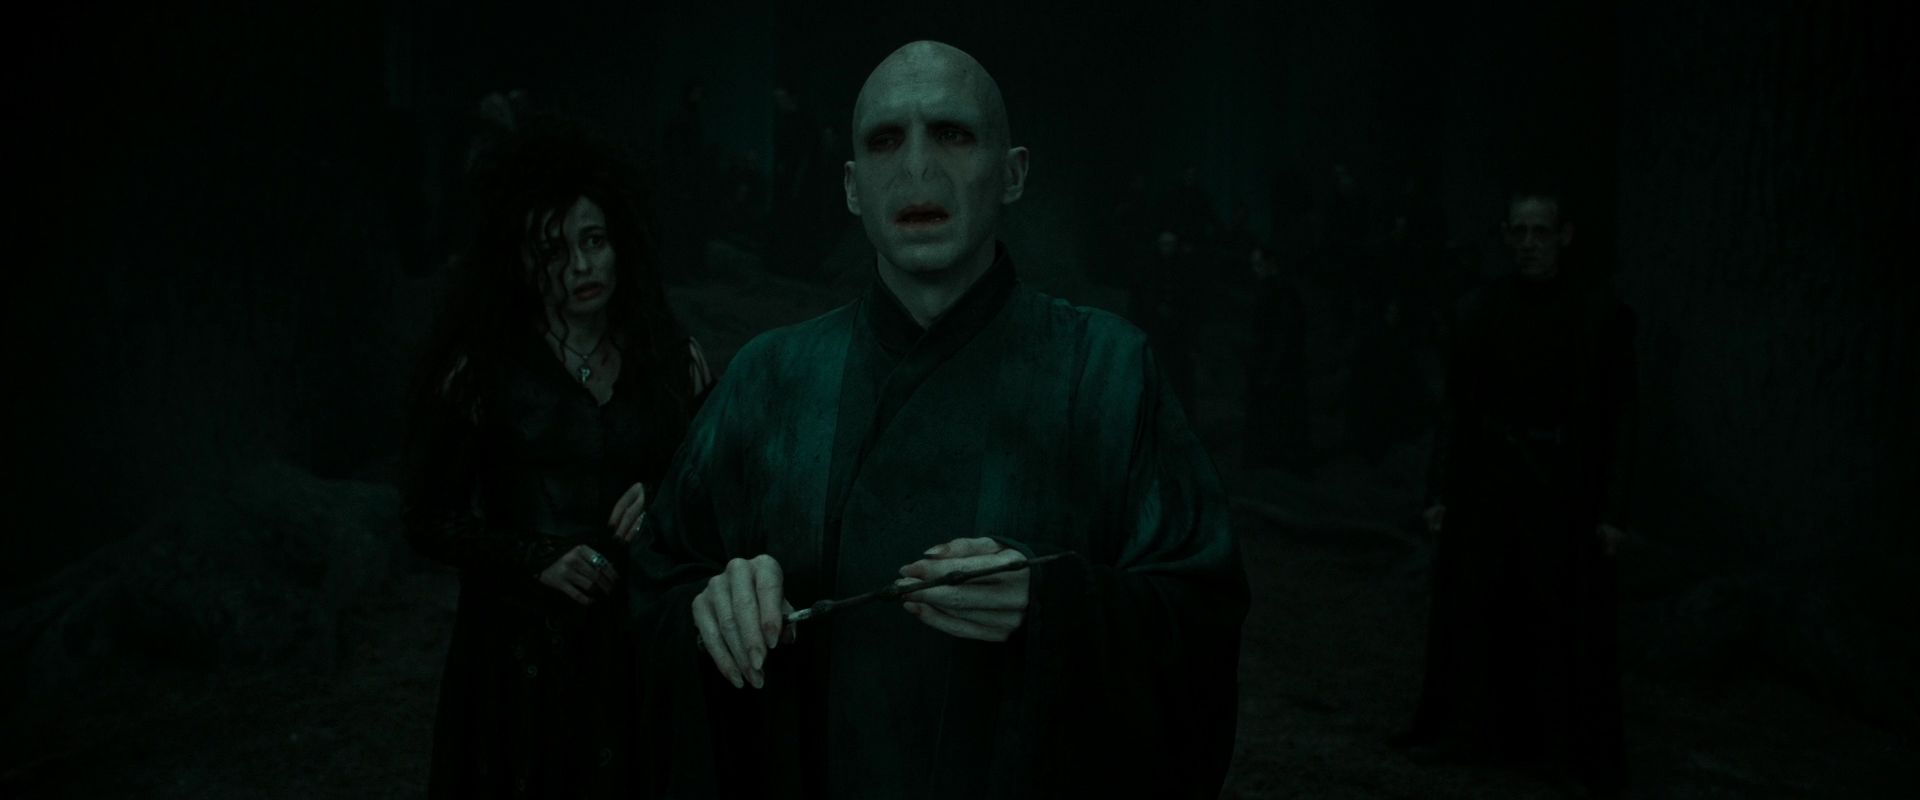 Cena do filme Harry Potter e as Relíquias da Morte: Parte 2. A cena mostra Voldemort na floresta, no escuro e com a Varinha das Varinhas na mão. Atrás dele, e meio desfocada, está Bellatrix Lestrange. Voldemort é careca, tem pele cor de leite e um nariz de cobra. Bellatrix é branca, tem cabelos sedosos pretos e usa um vestido escuro.